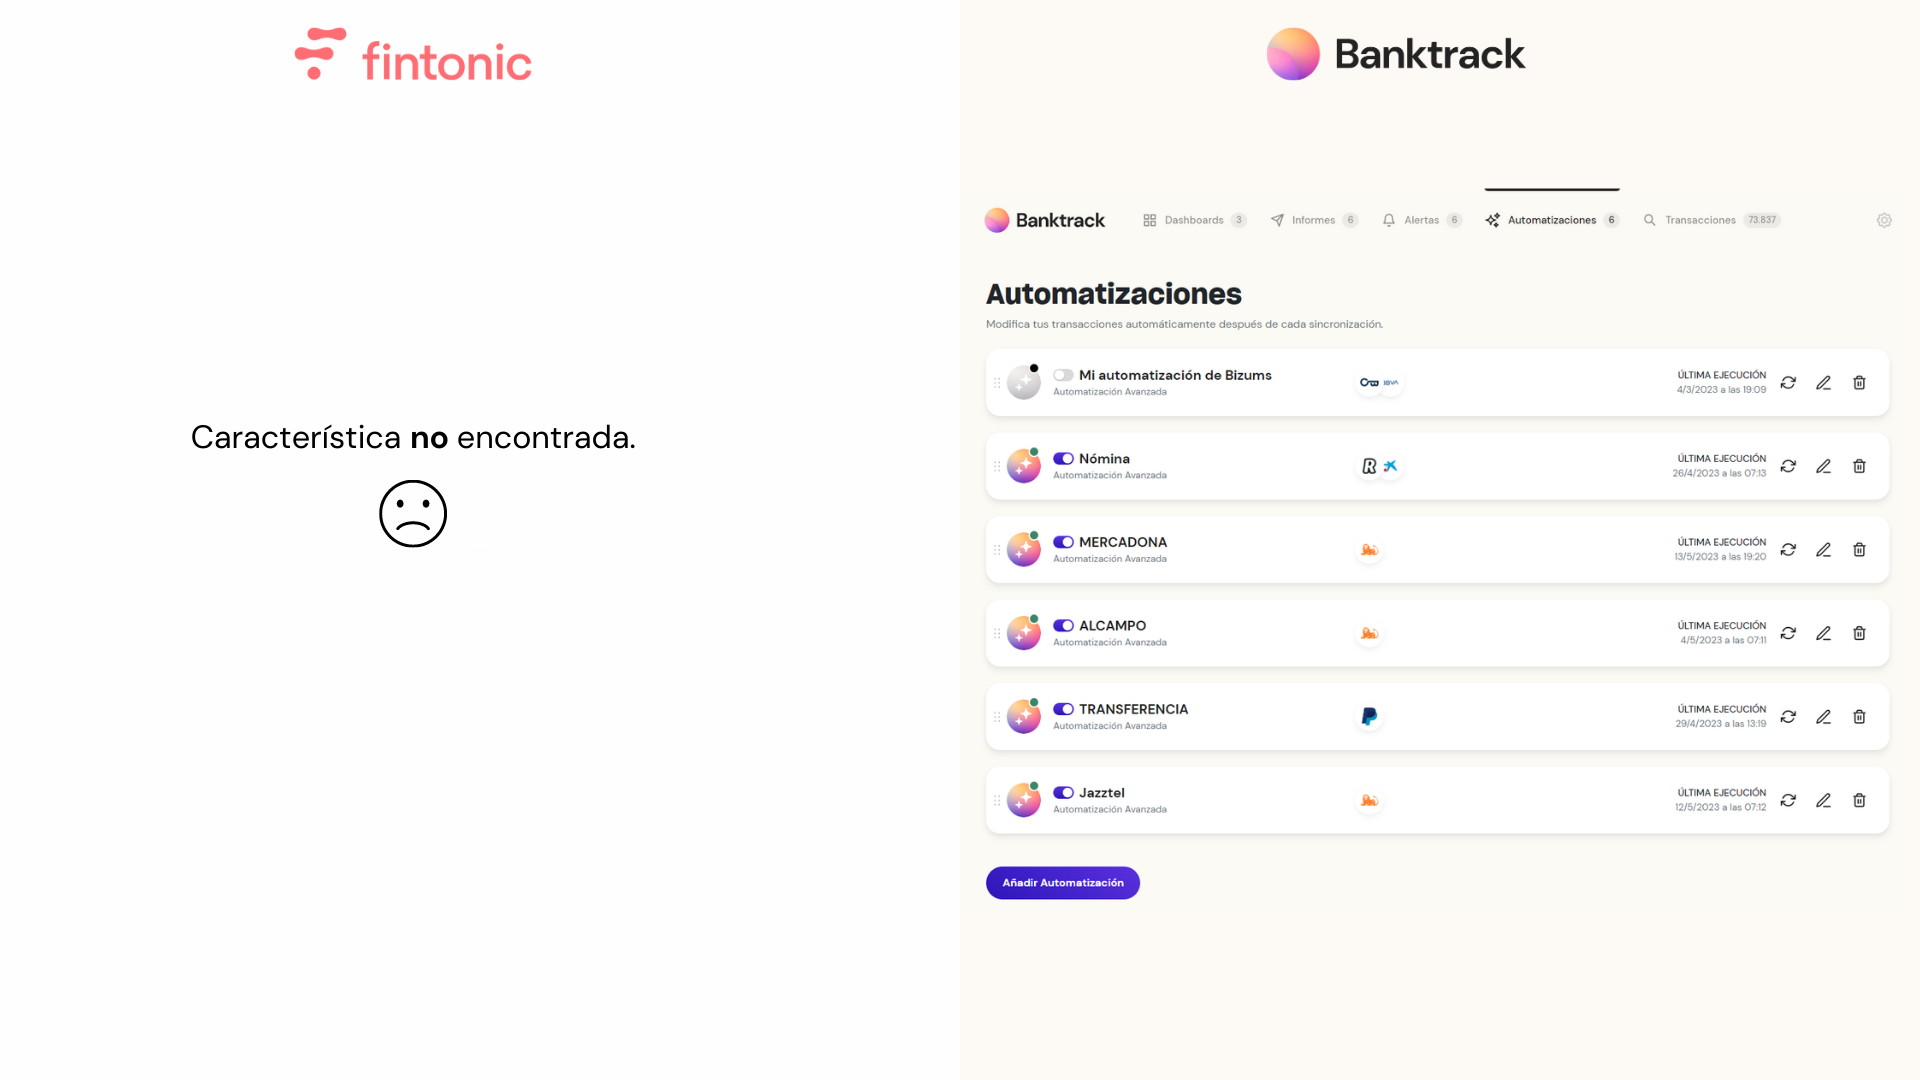 Captura sobre las automatizaciones bancarias que incorpora Banktrack, la mejor alternativa a fintonic